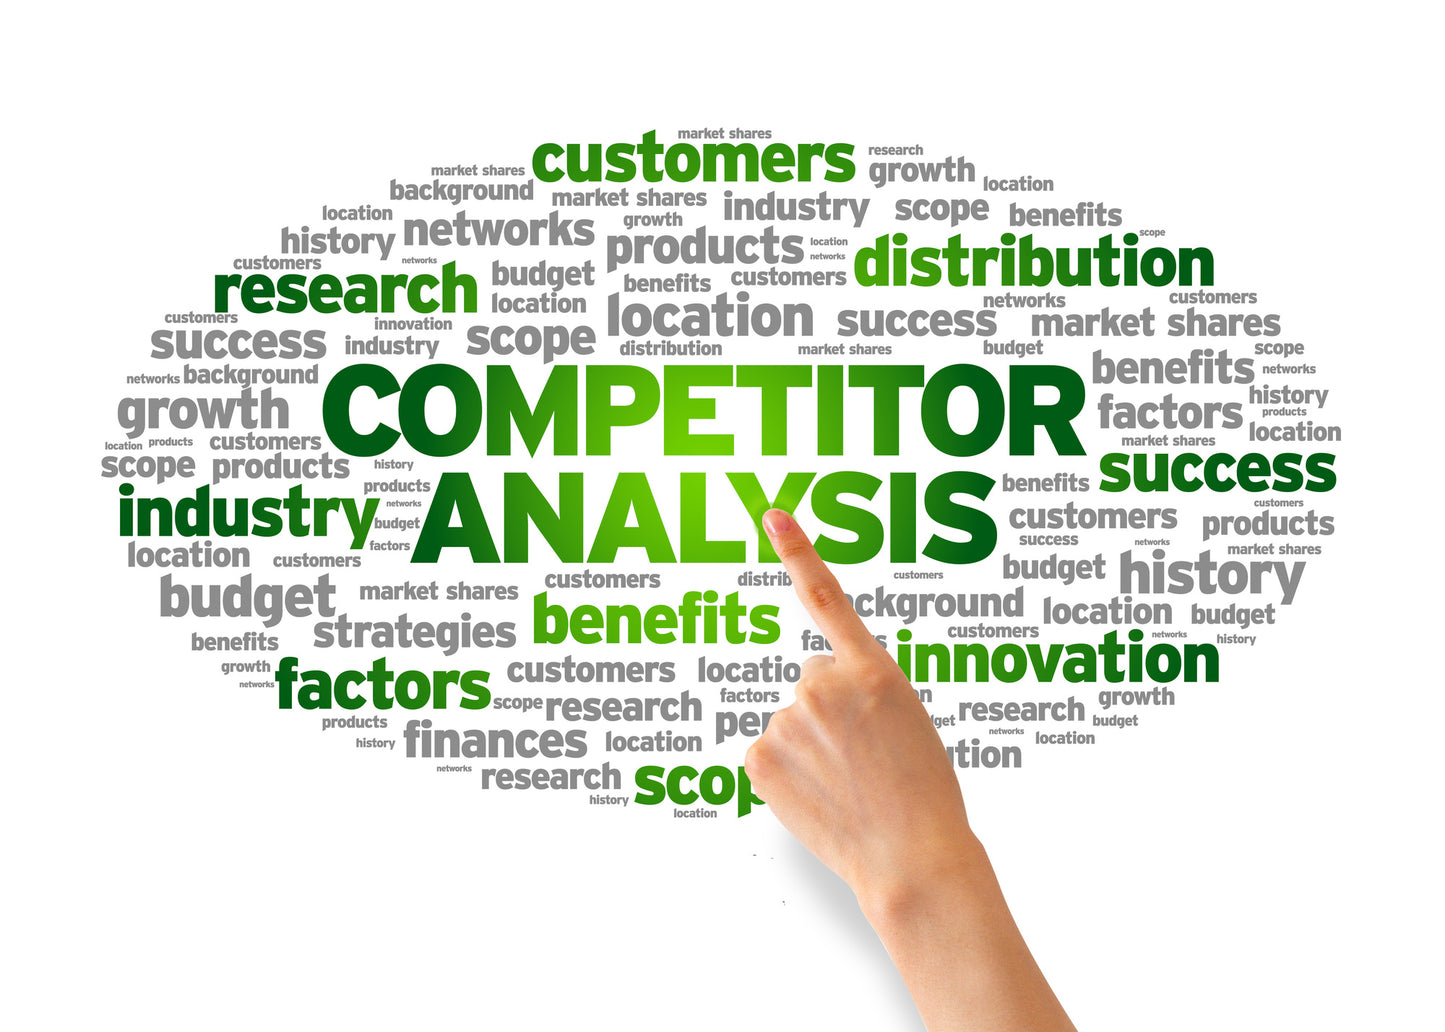 الدليل الشامل لعمل تحليل سوق ومنافسين Ultimate competition and market reserch